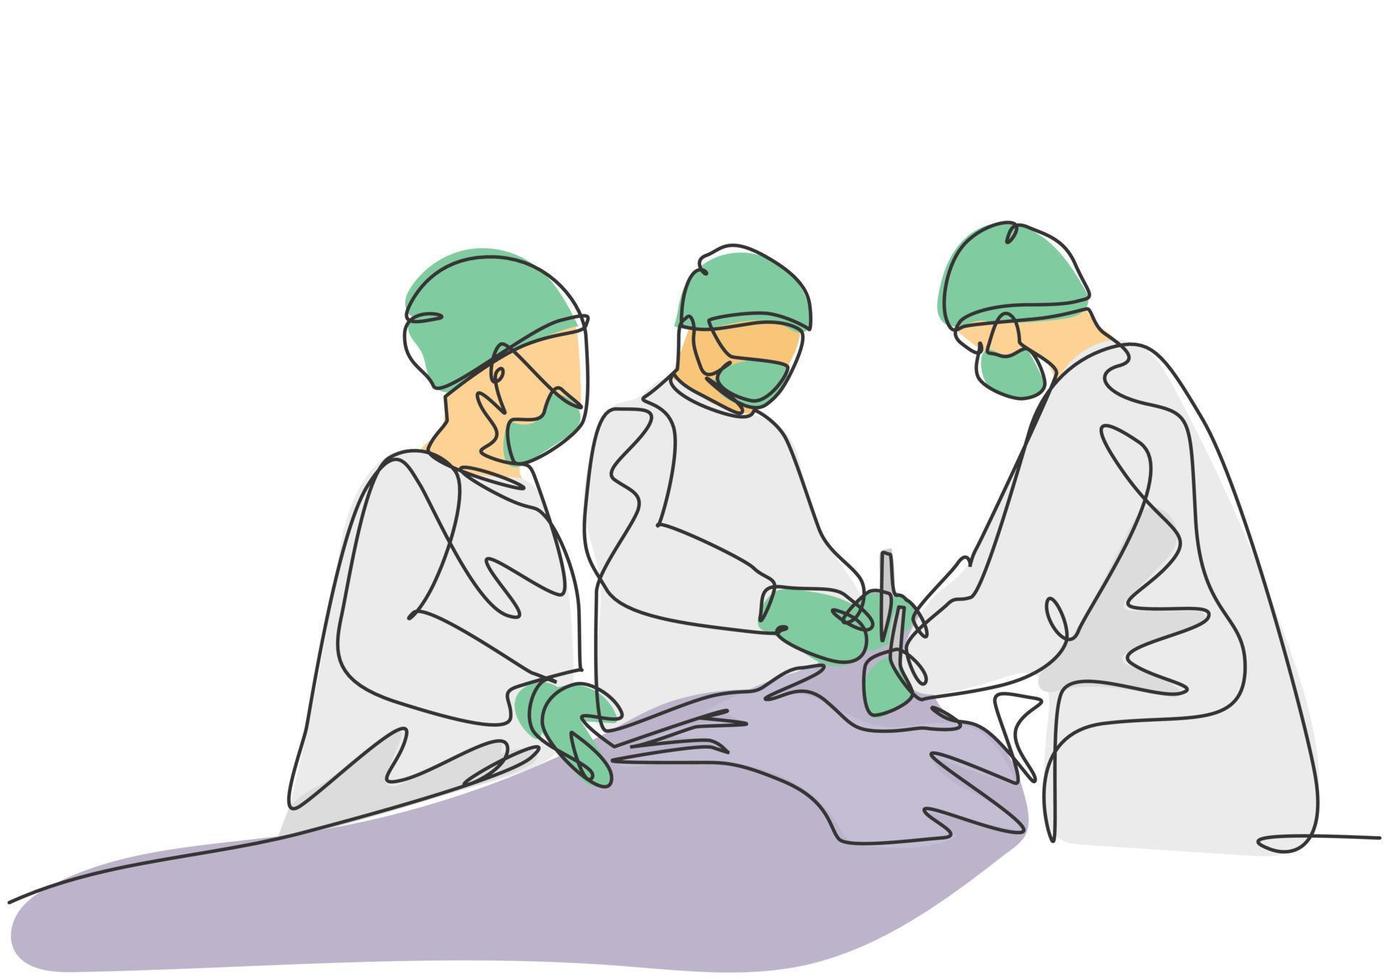 enkele doorlopende enkele lijntekening groep teamchirurg arts die een operatie uitvoert aan de kritieke patiënt in de chirurgische operatiekamer. medische chirurgie concept een lijn tekenen ontwerp vectorillustratie vector